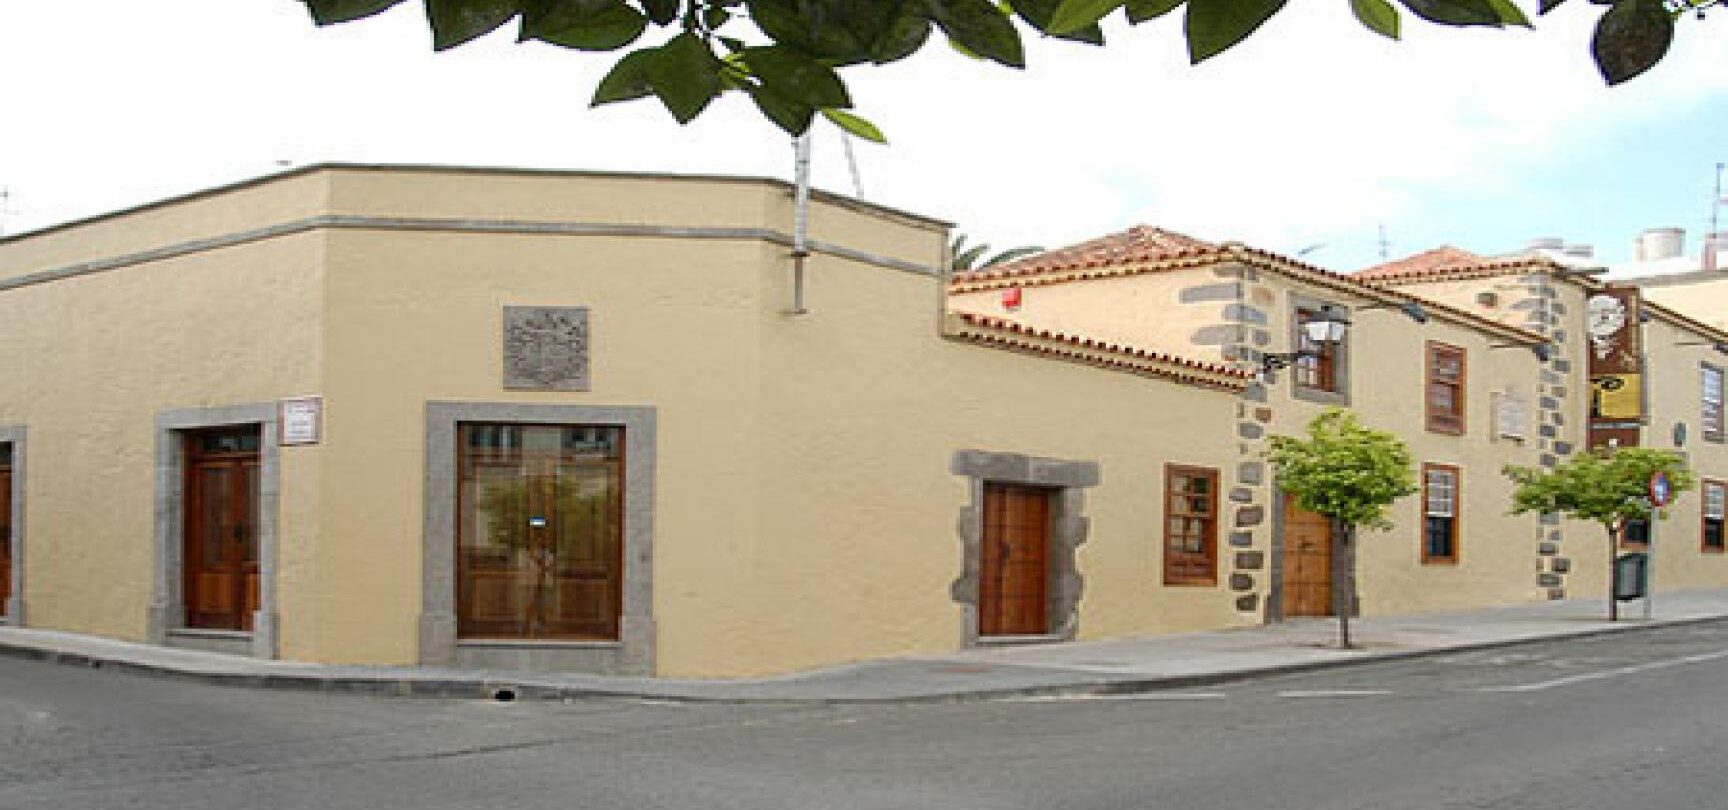 CASA – MUSEO LEÓN Y CASTILLO		Telde	Las Palmas	Museo